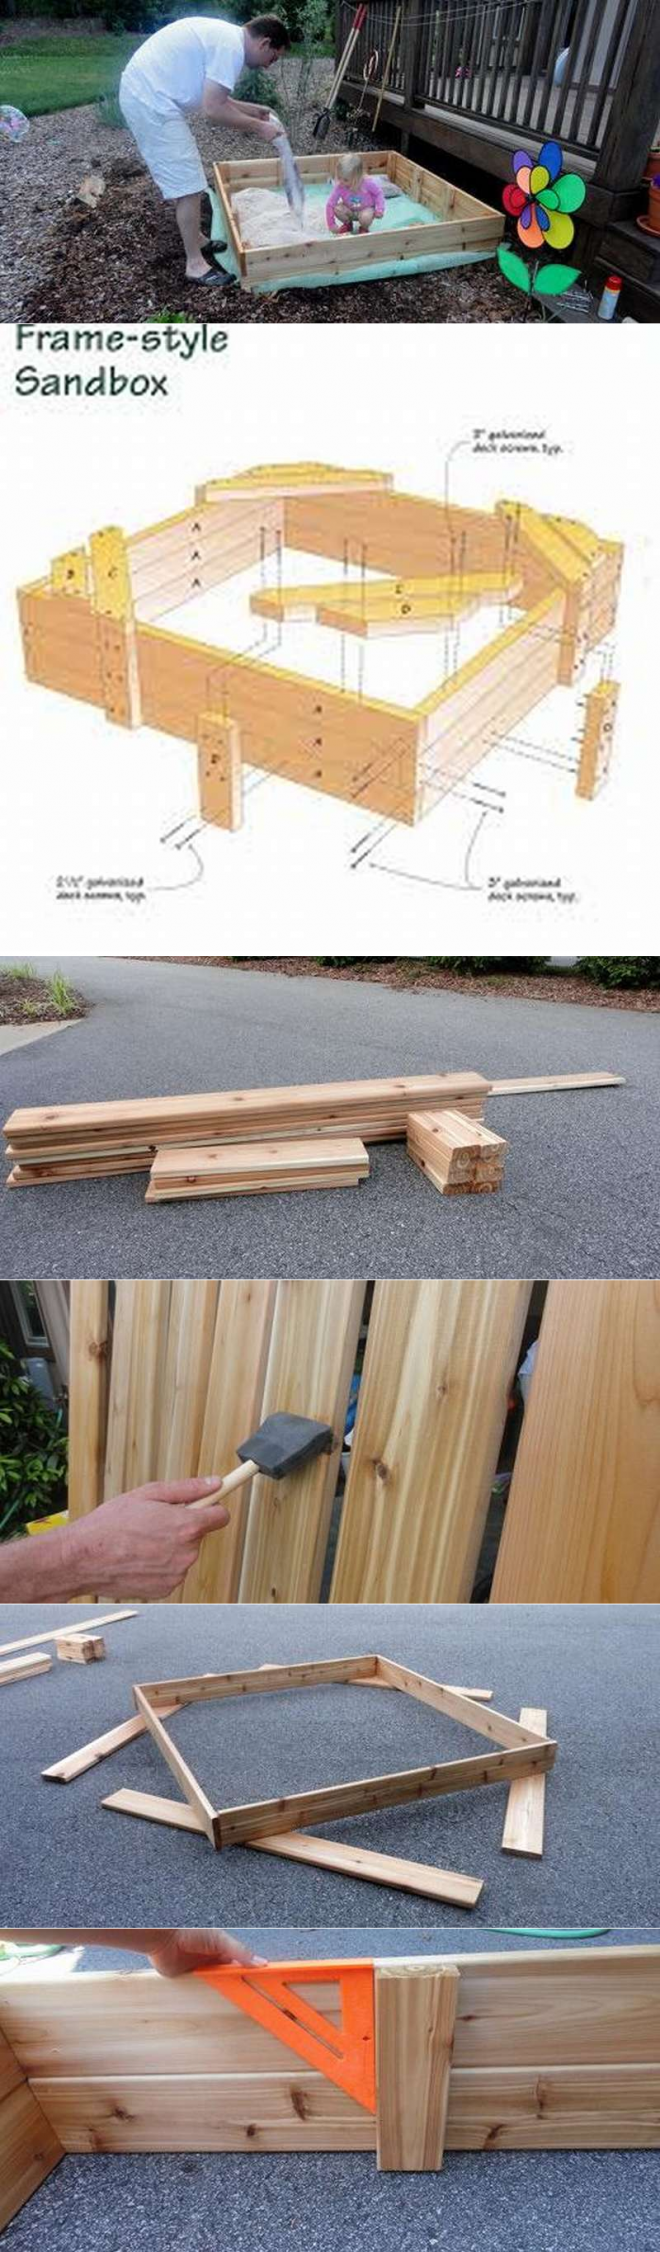 Как сделать деревянную детскую песочницу с крышкой своими руками